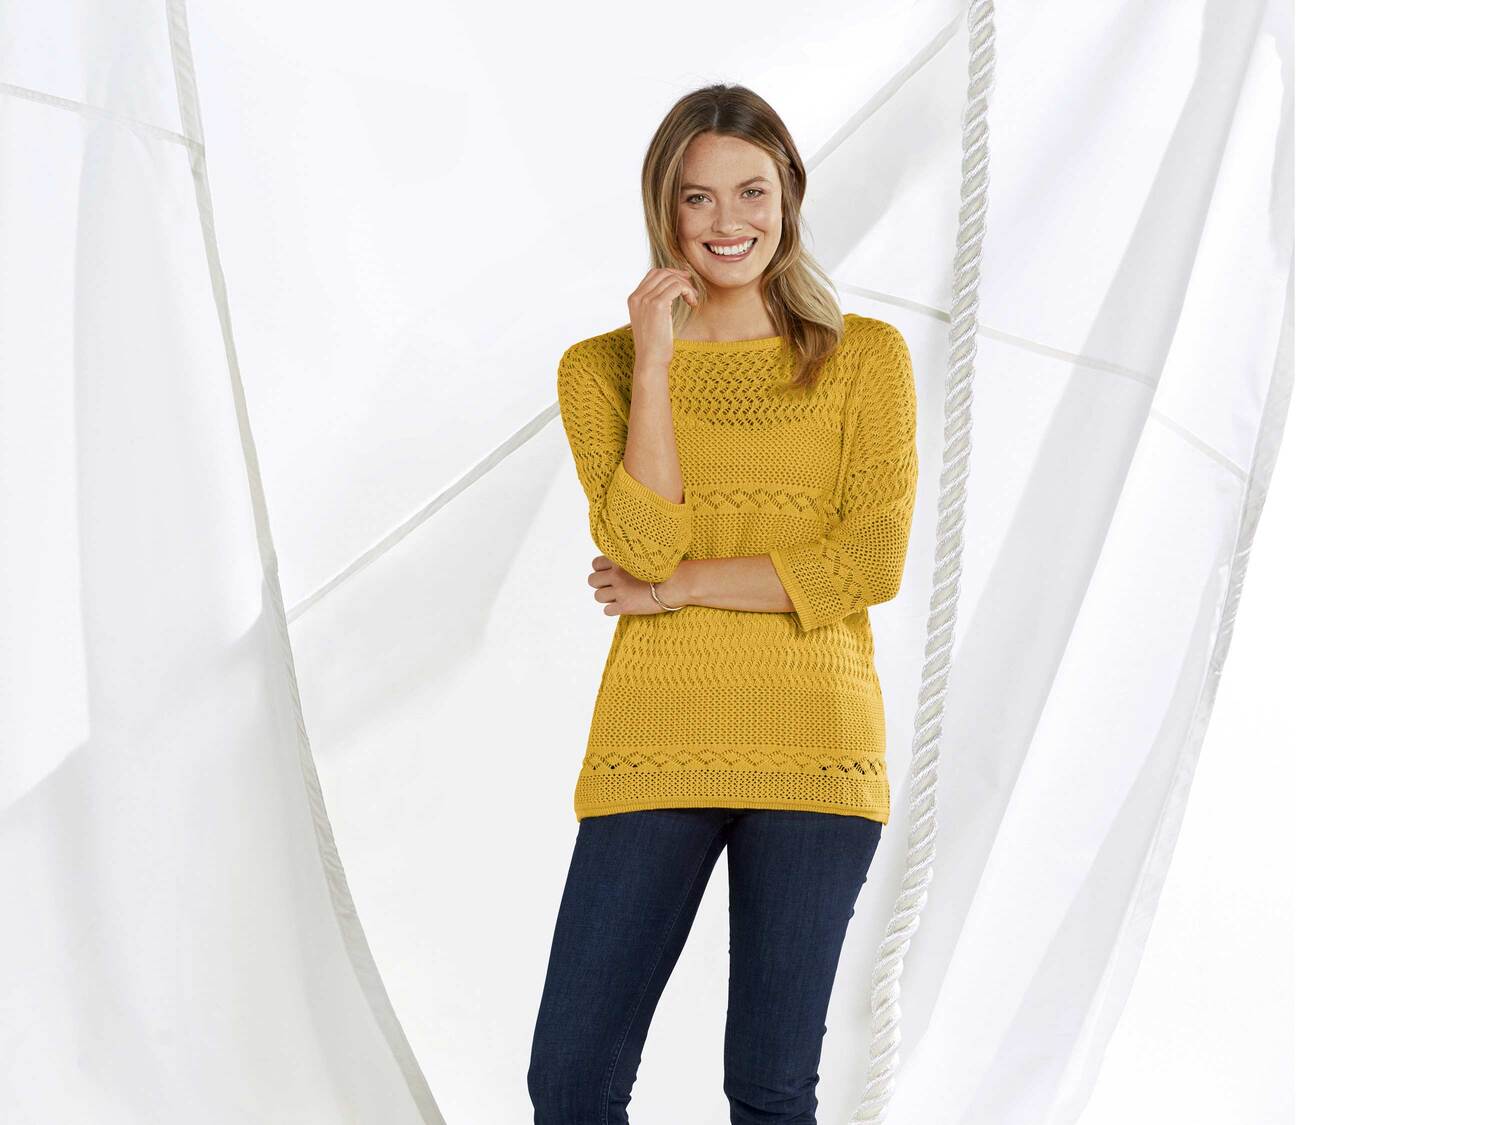 Sweter damski z bawełny Esmara, cena 34,99 PLN 
- rozmiary: XS-L
- 100% bawełny
- ...